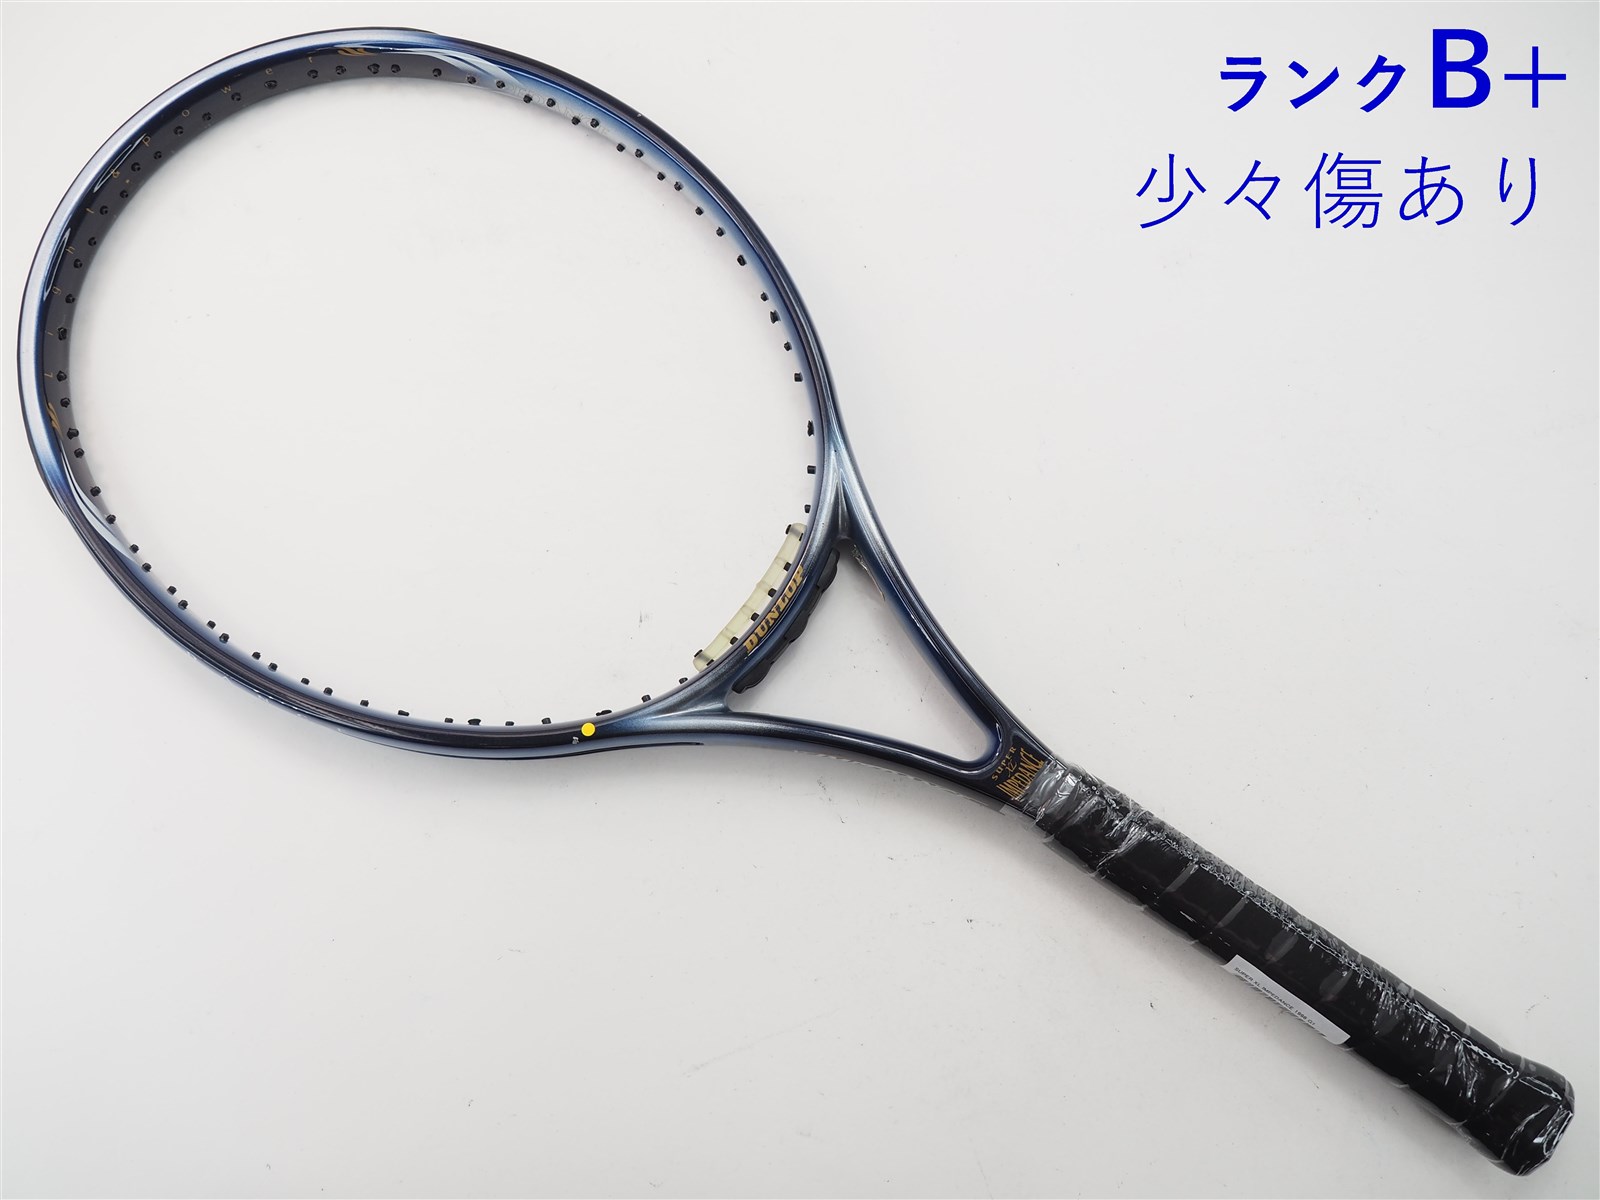 テニスラケット ダンロップ スーパー XLインピーダンス (G1)DUNLOP SUPER XL IMPEDANCE 1998